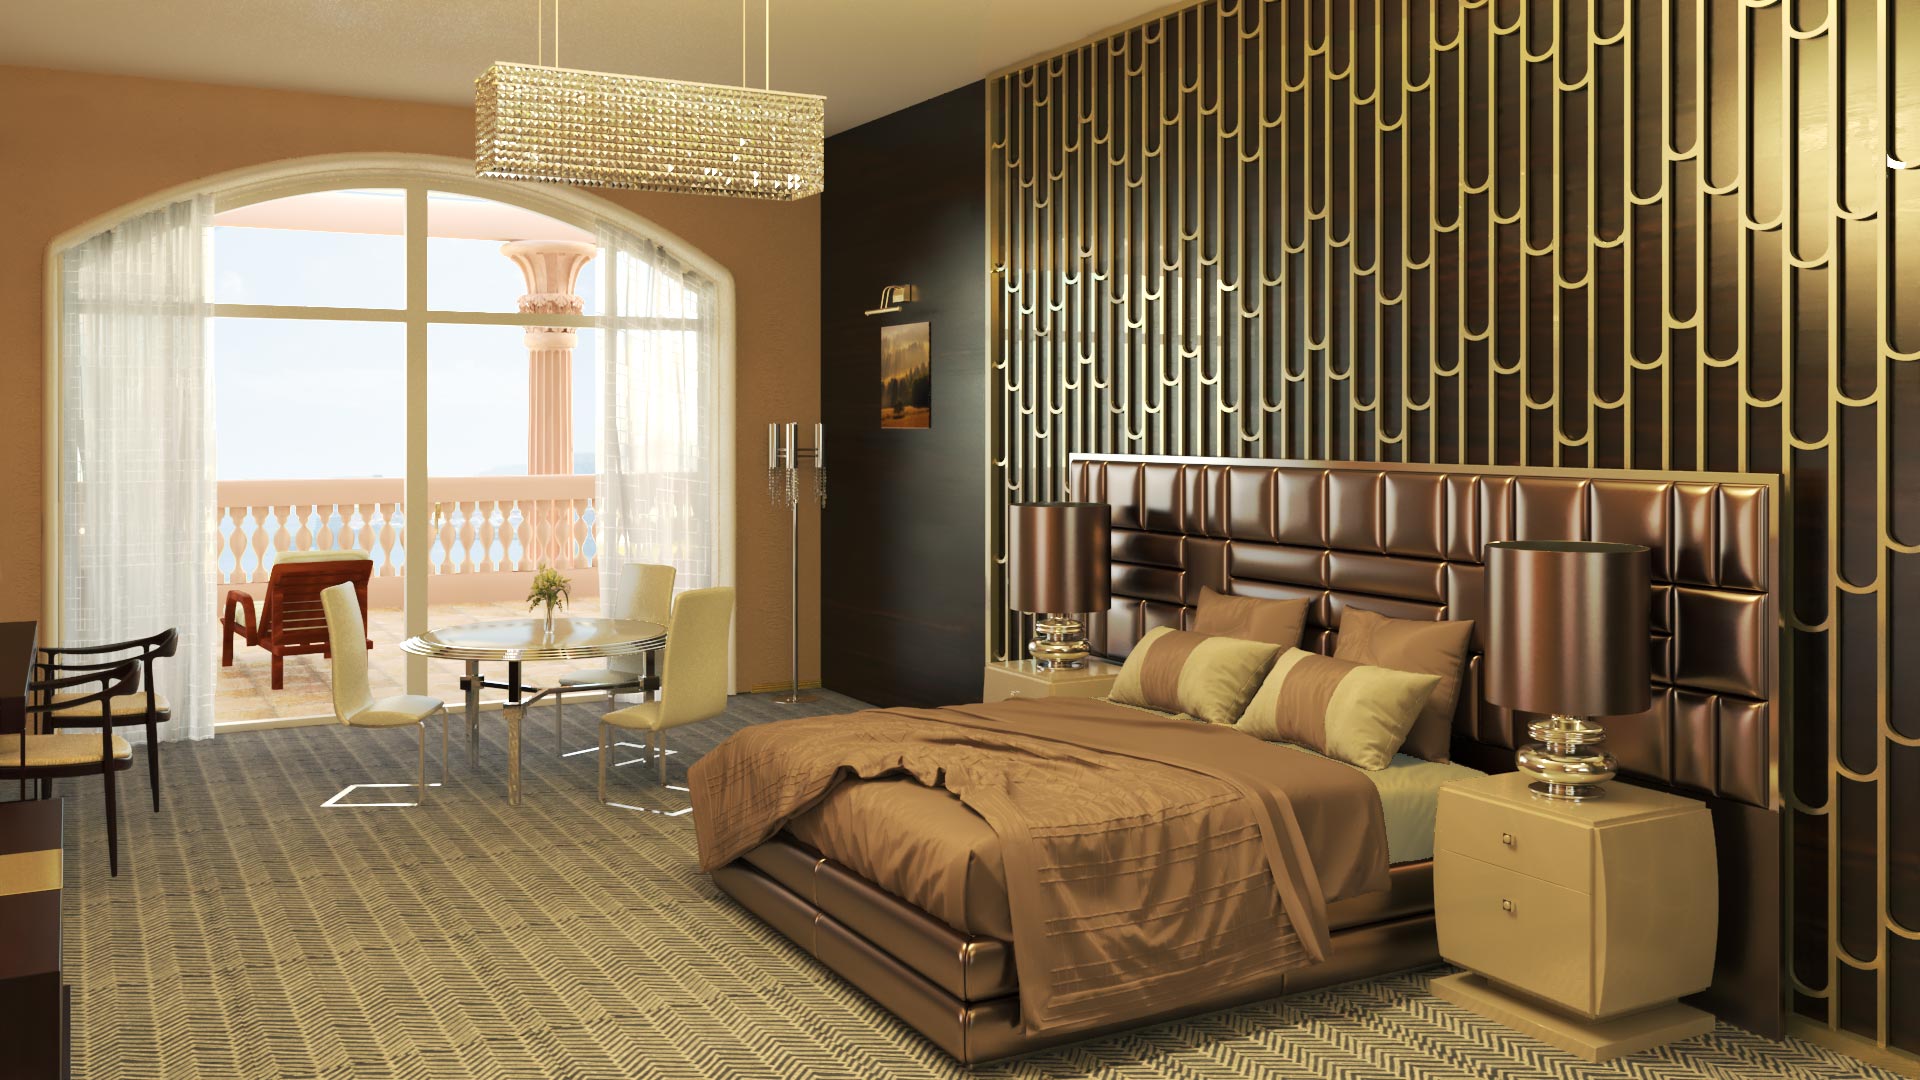 Chambre d'hôtel, par Marina Sije, Graphiste perspectiviste architecture - Design, décoration, aménagement et rendu 3d